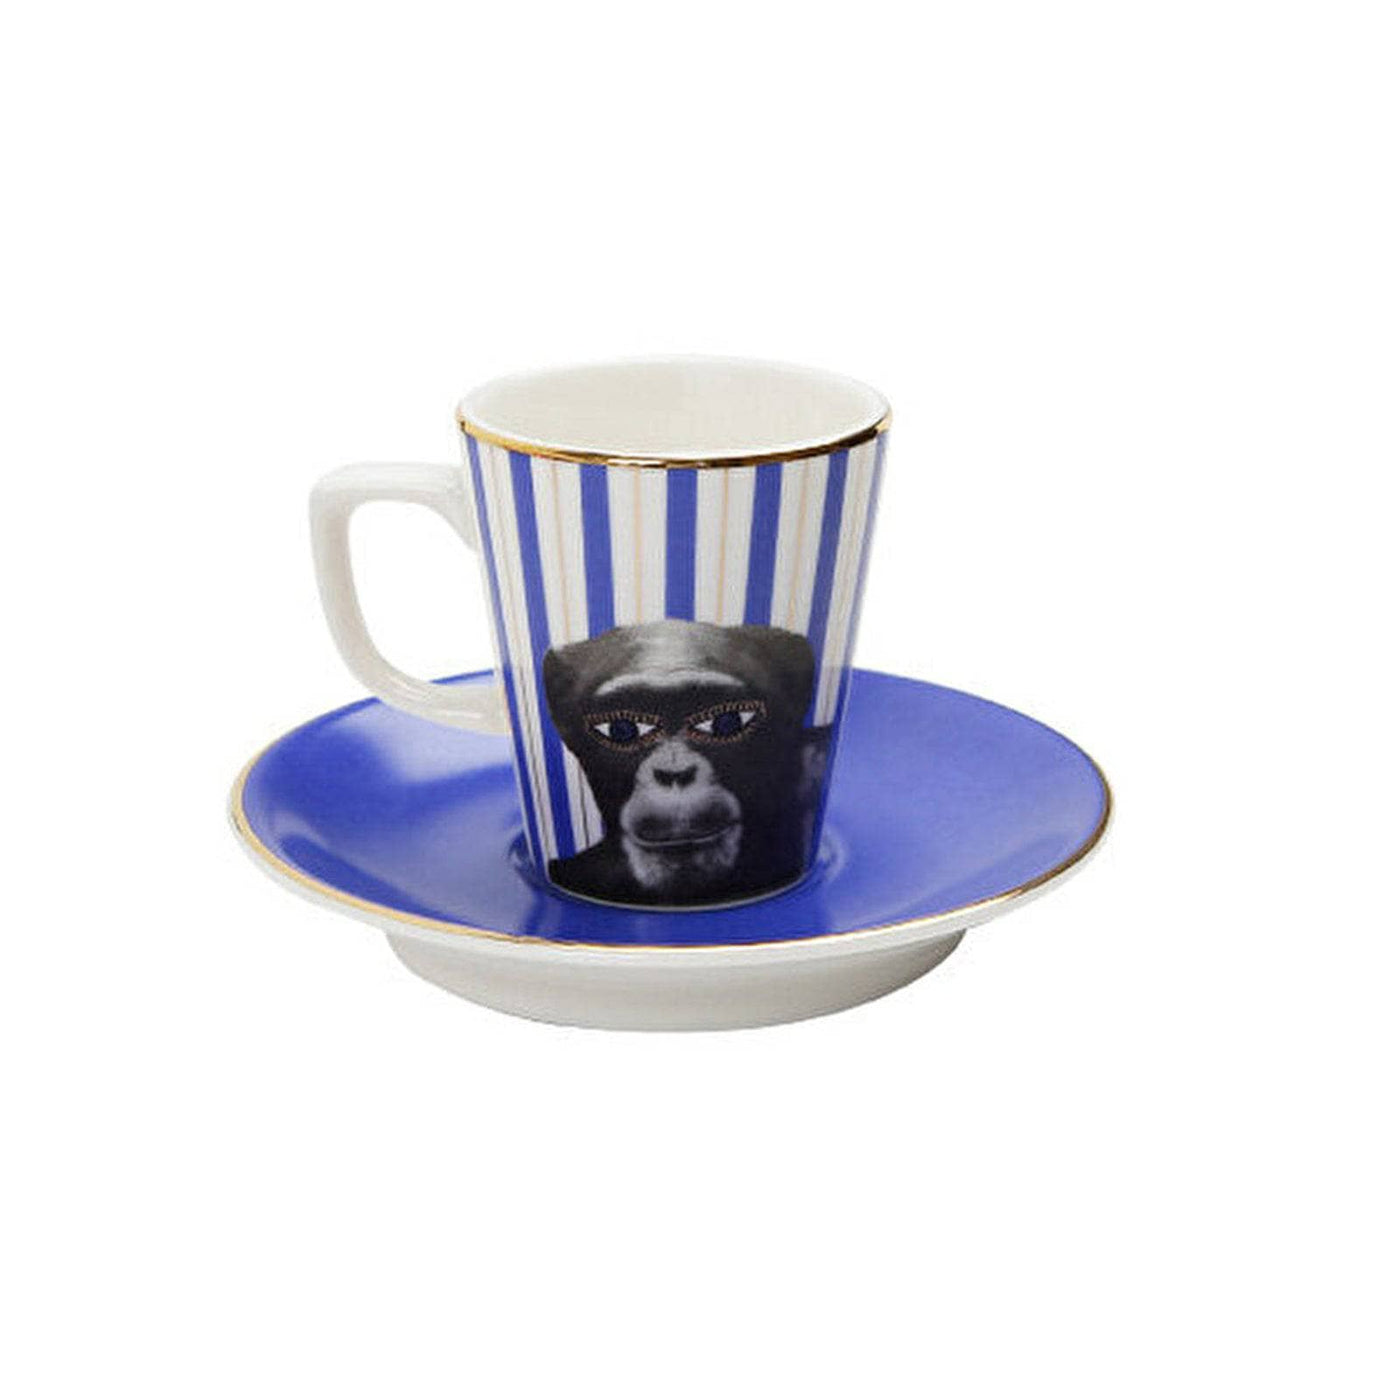 Wild Life Set of 6 Monkey Espresso Cups and Saucers, Blue, 75 ml Cups & Mugs sazy.com